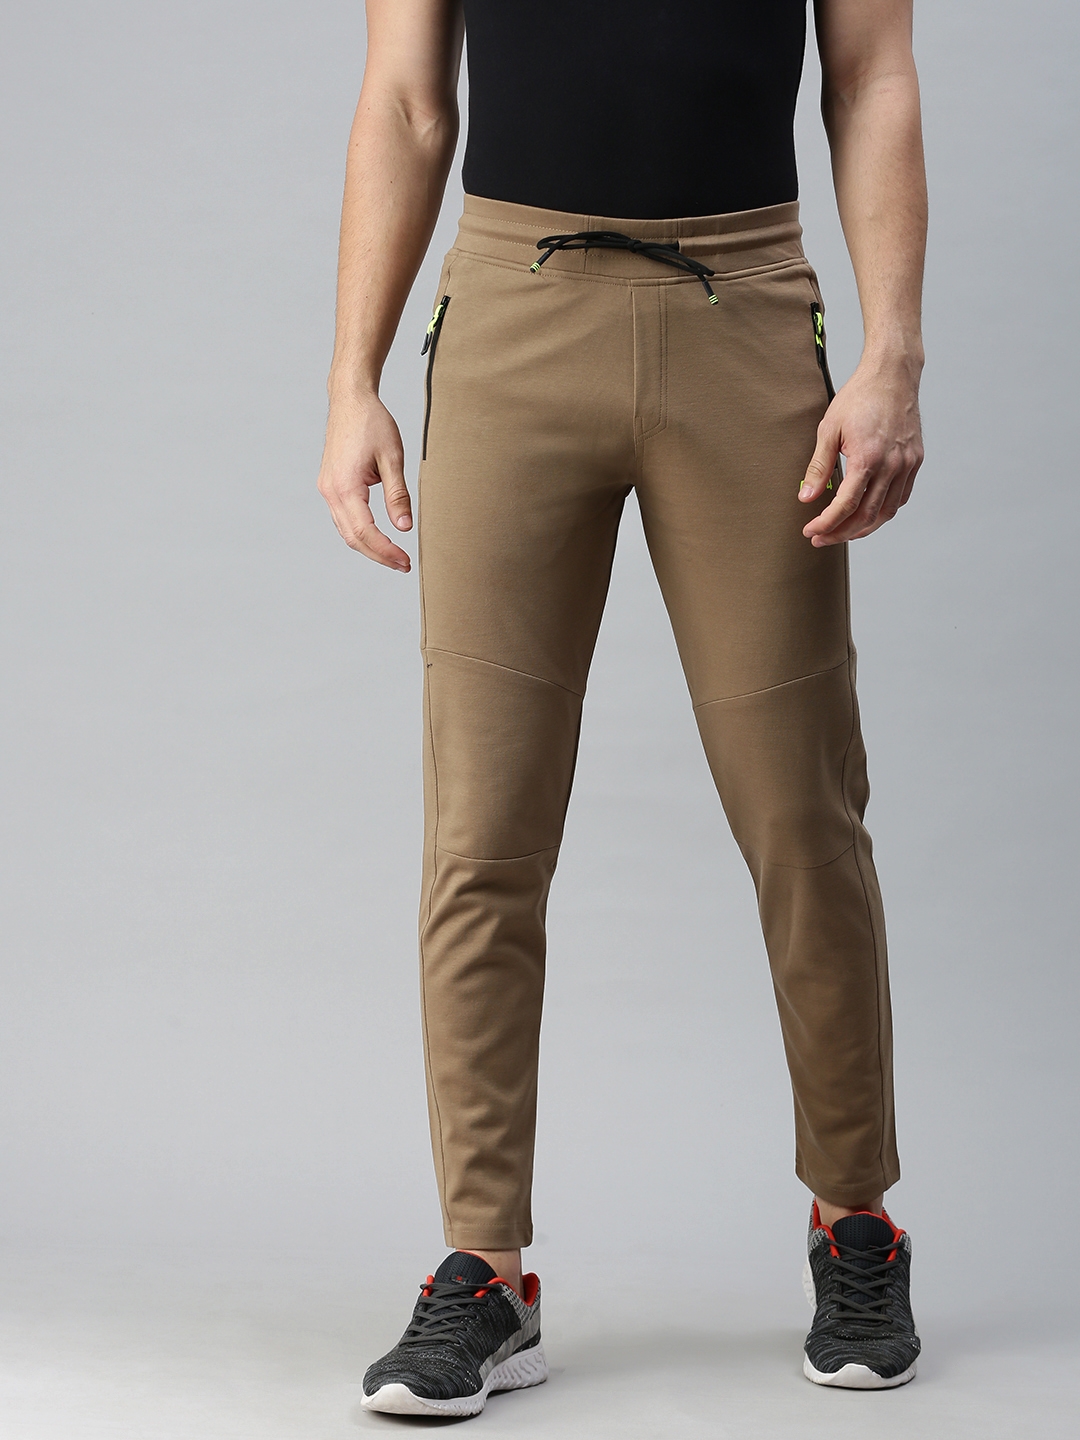 Buy Octave Khaki Cotton Track Pants for Men Online  Tata CLiQ